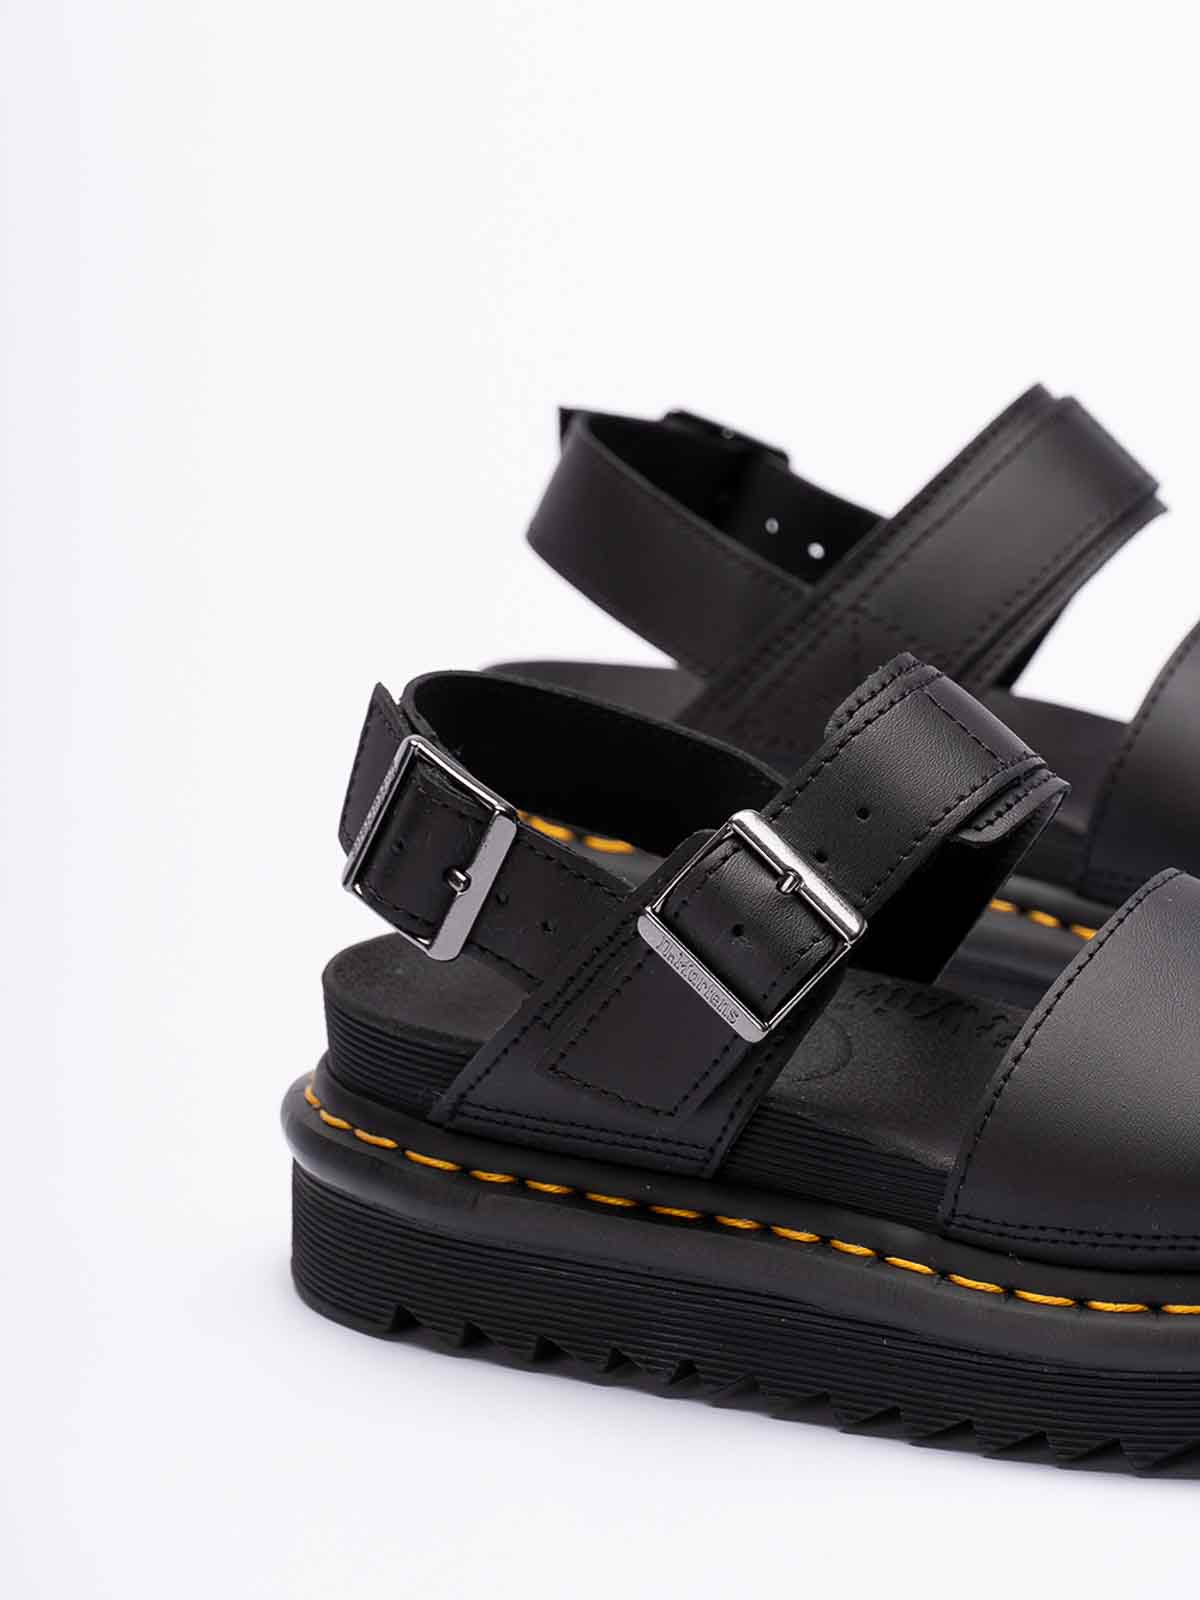 Shop Dr. Martens' Voss Sandals In Black